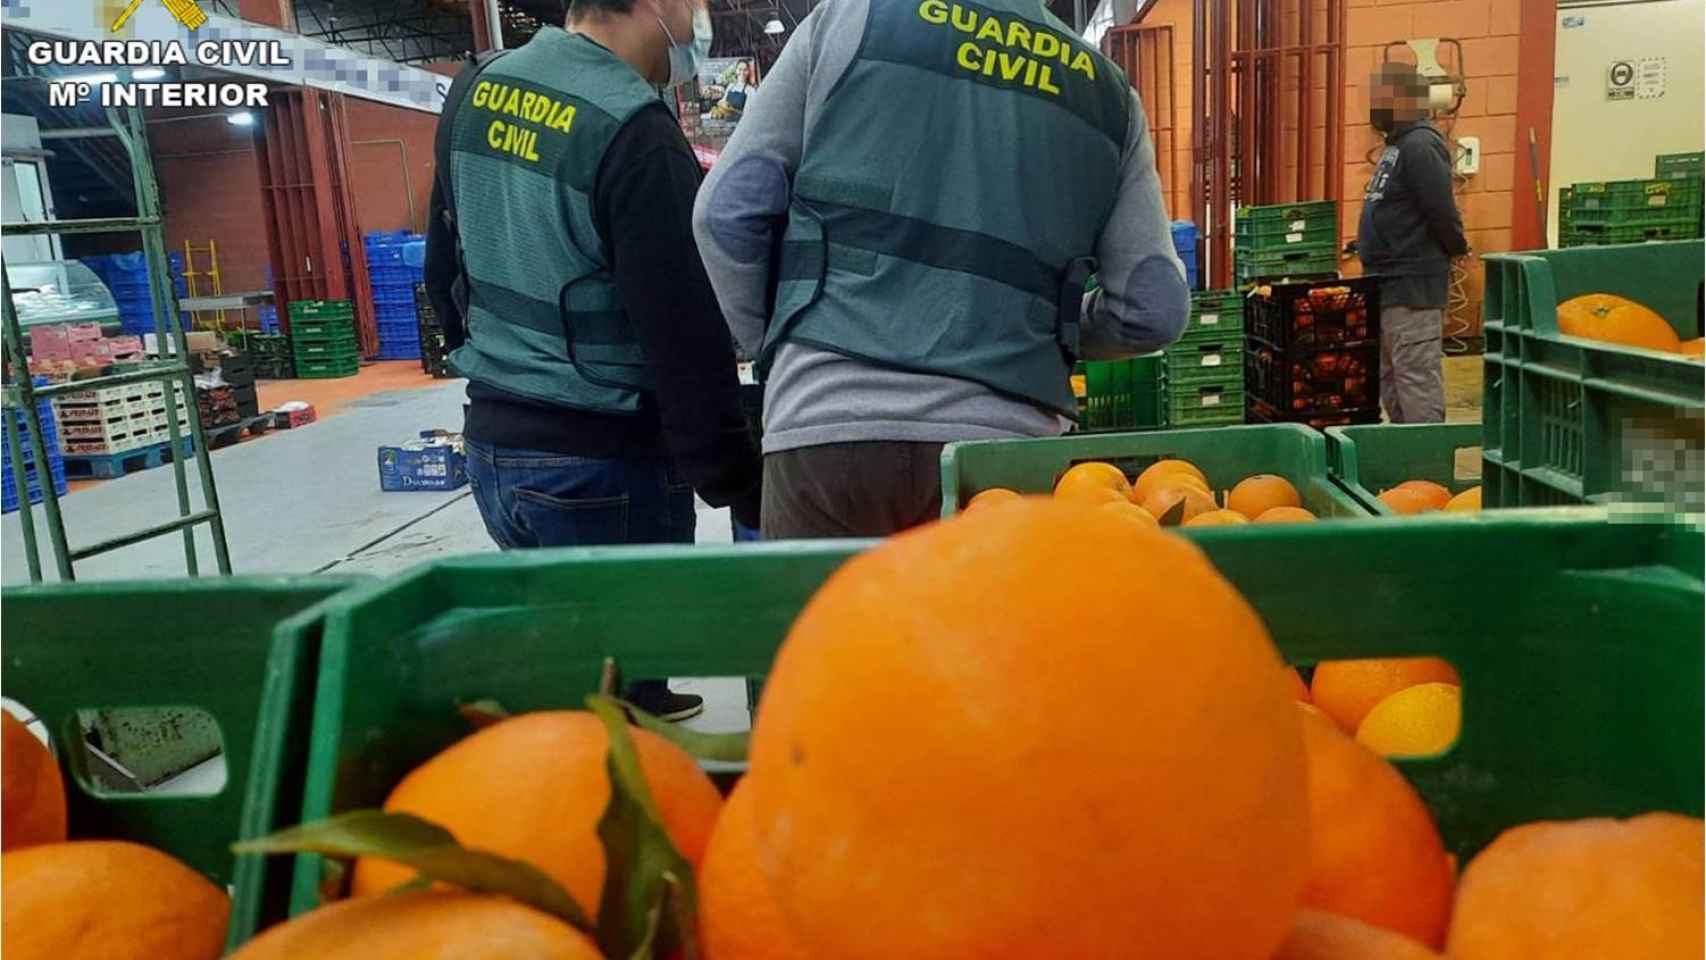 Naranjas confiscadas por la Guardia Civil de Alicante.